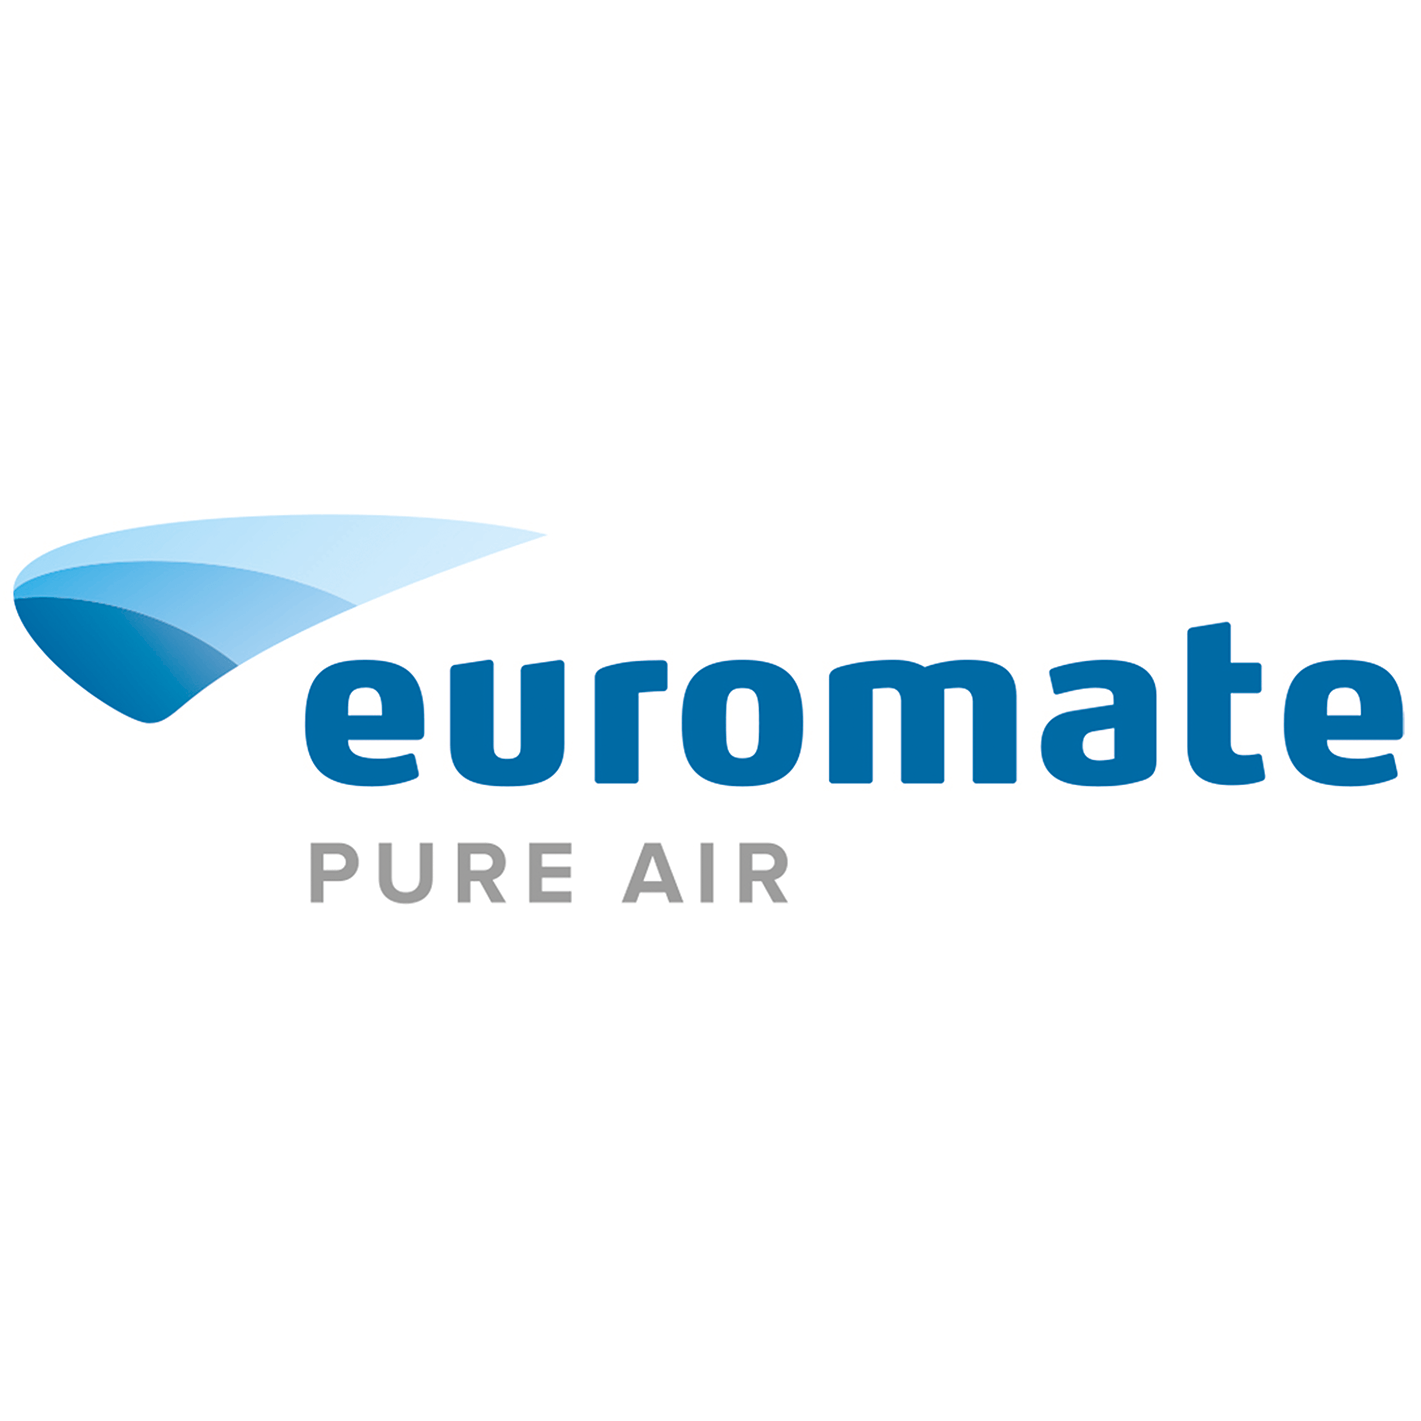 (c) Euromate.com